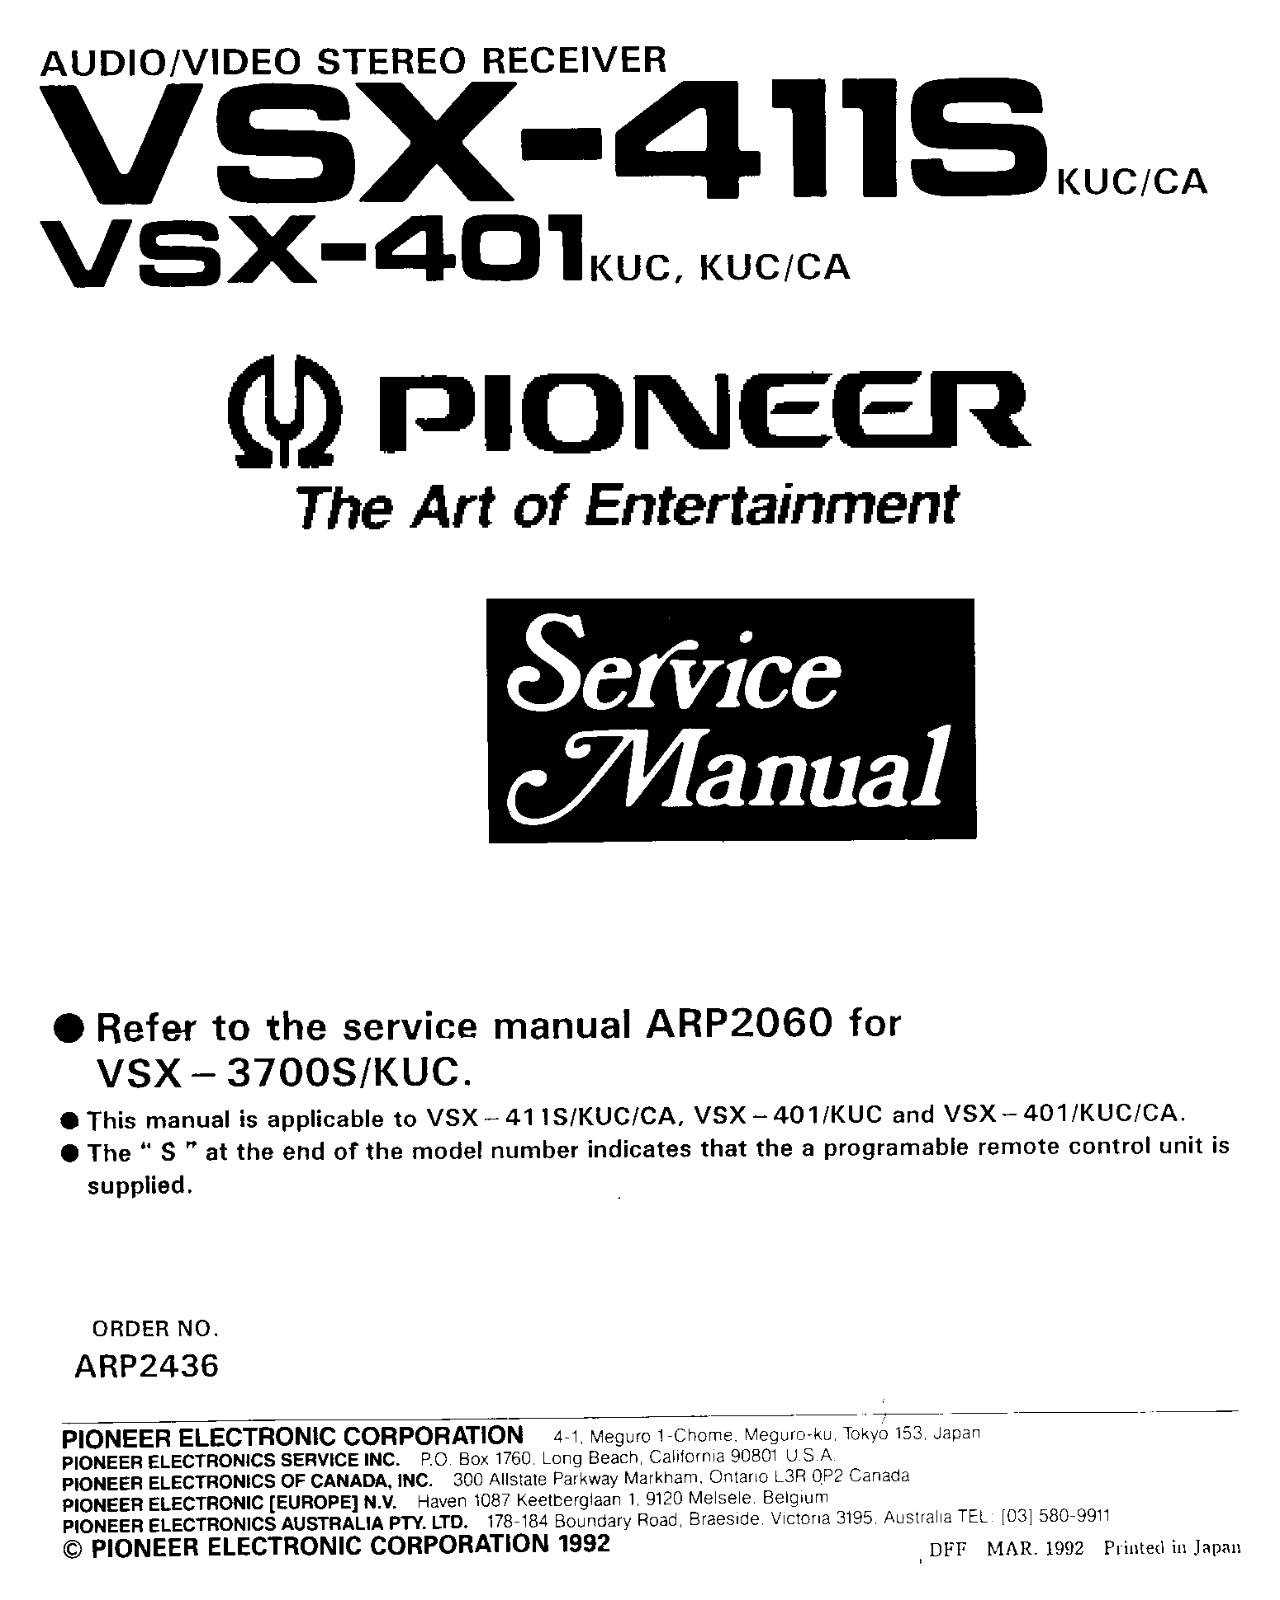 Pioneer VSX-401, VSX-411 Schematic